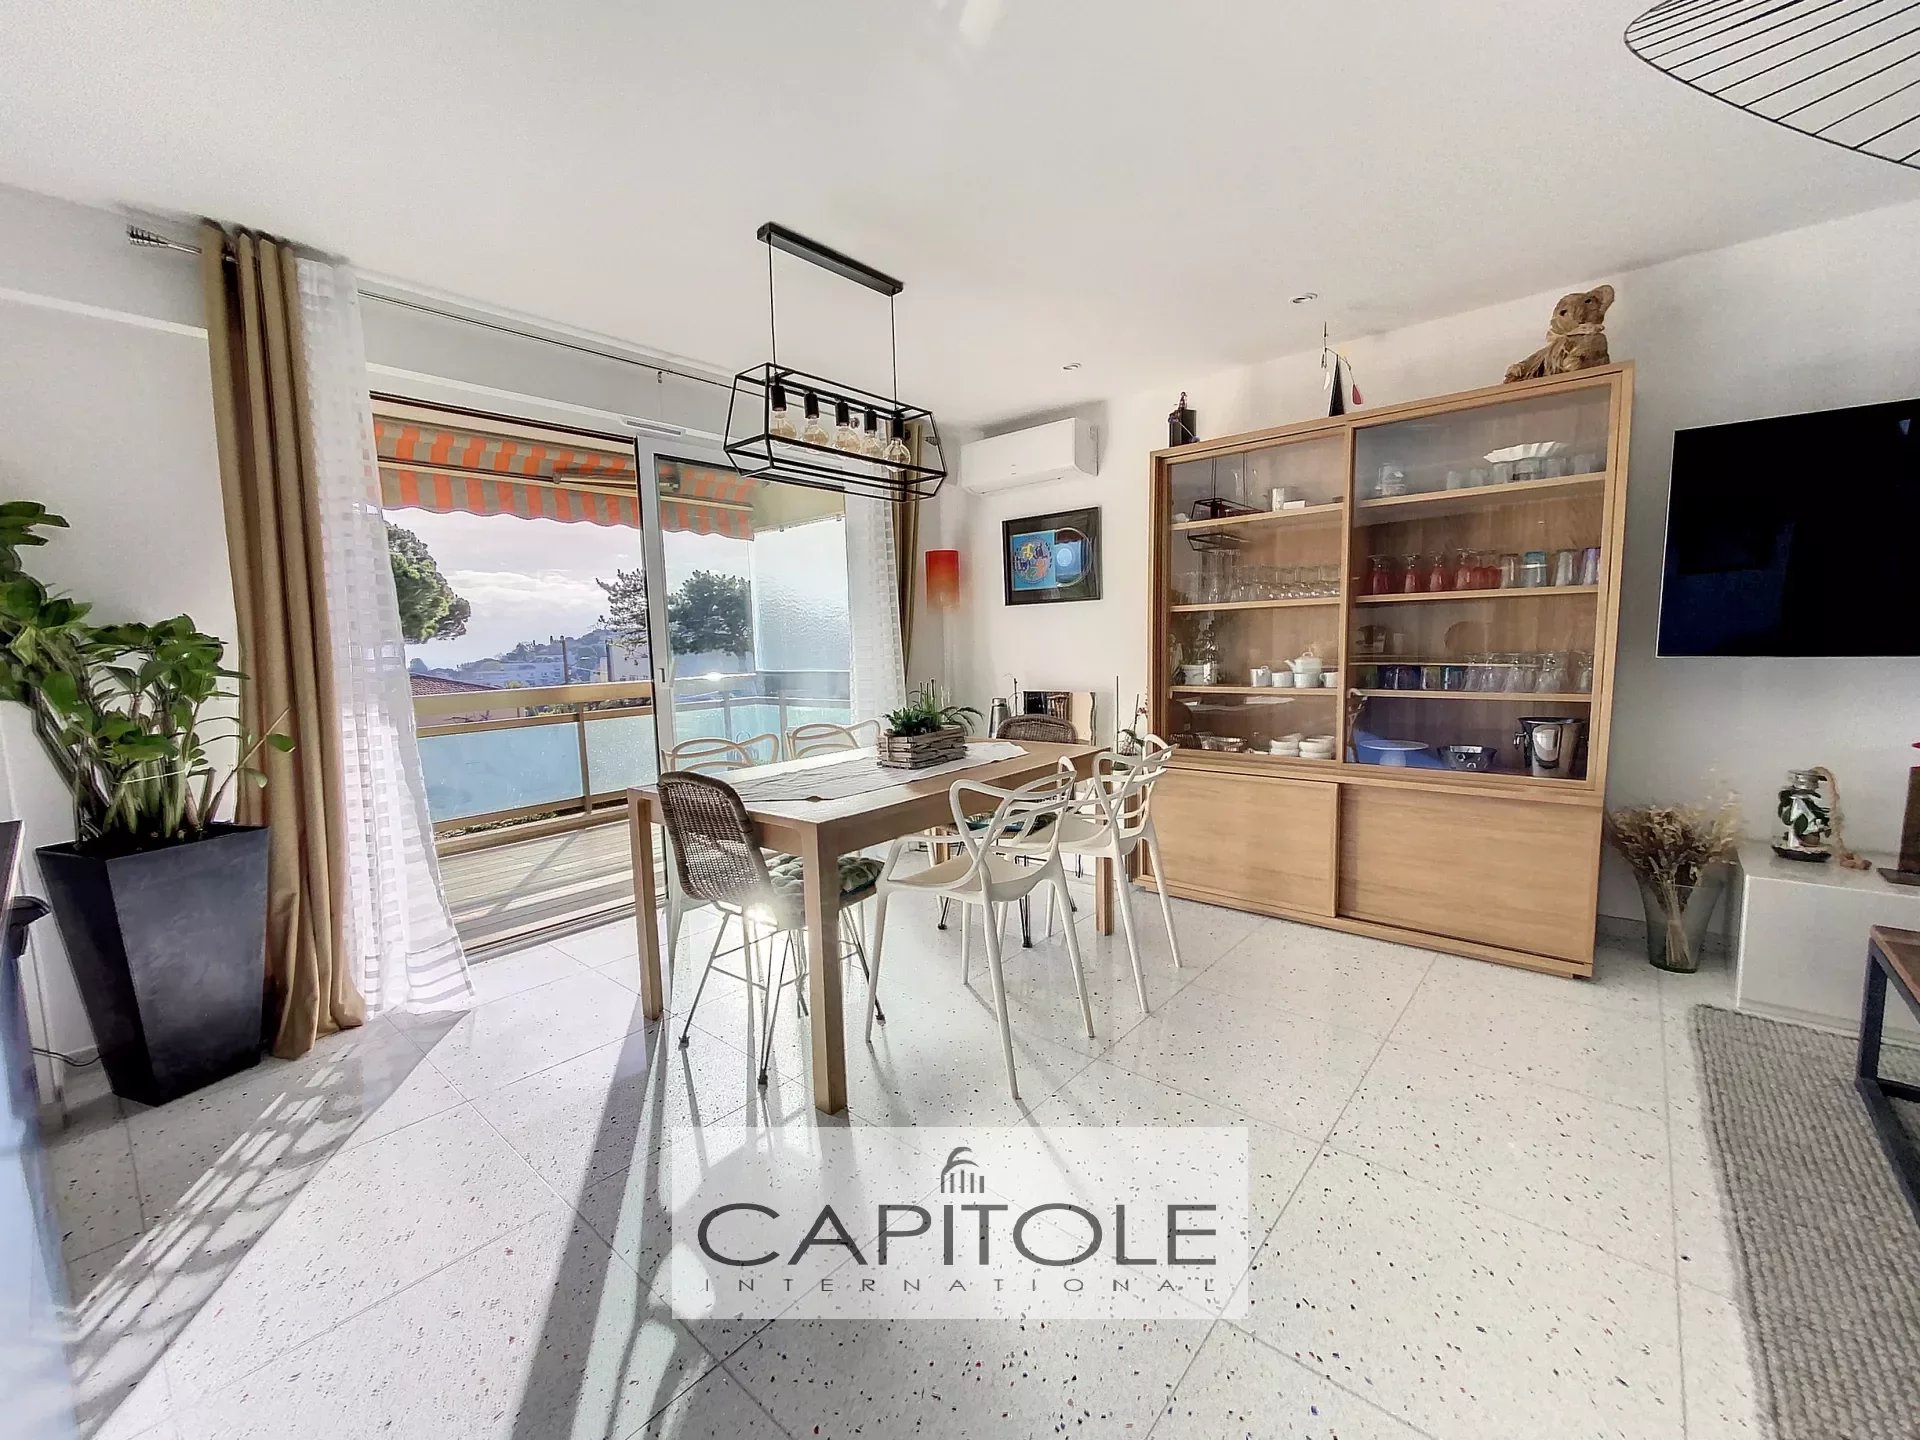 A vendre,  EXCLUSIVITE, Antibes Le Puy proche centre, appartement 4 pièces 92 m², vue mer et montagne, terrasse, garage, cave